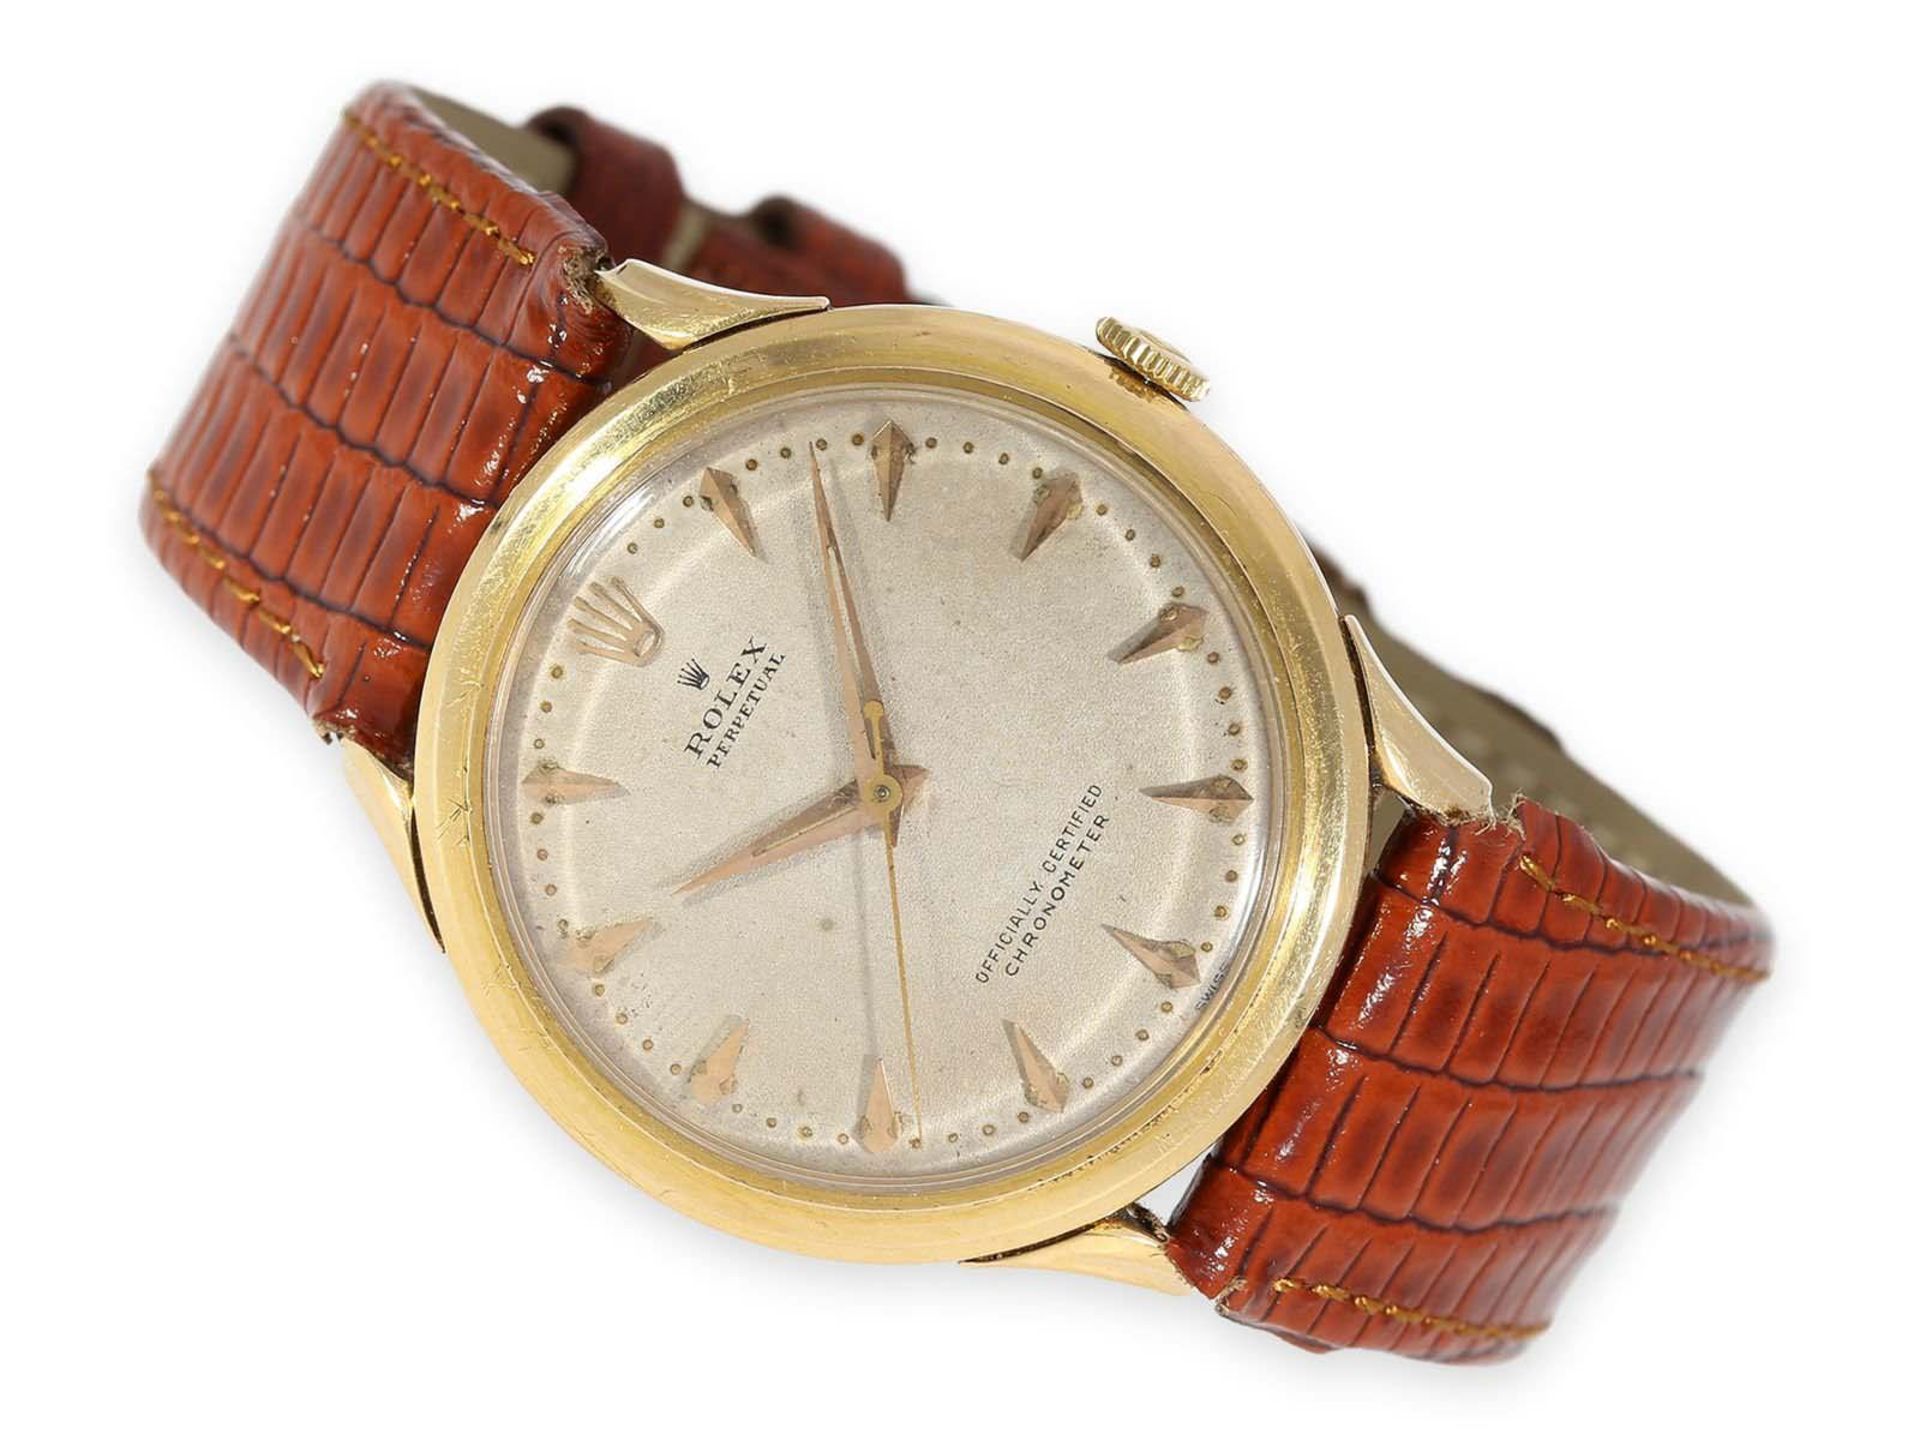 Armbanduhr: ganz frühes Rolex "Bombay" Chronometer in 18K Gold, vermutlich eine der frühesten